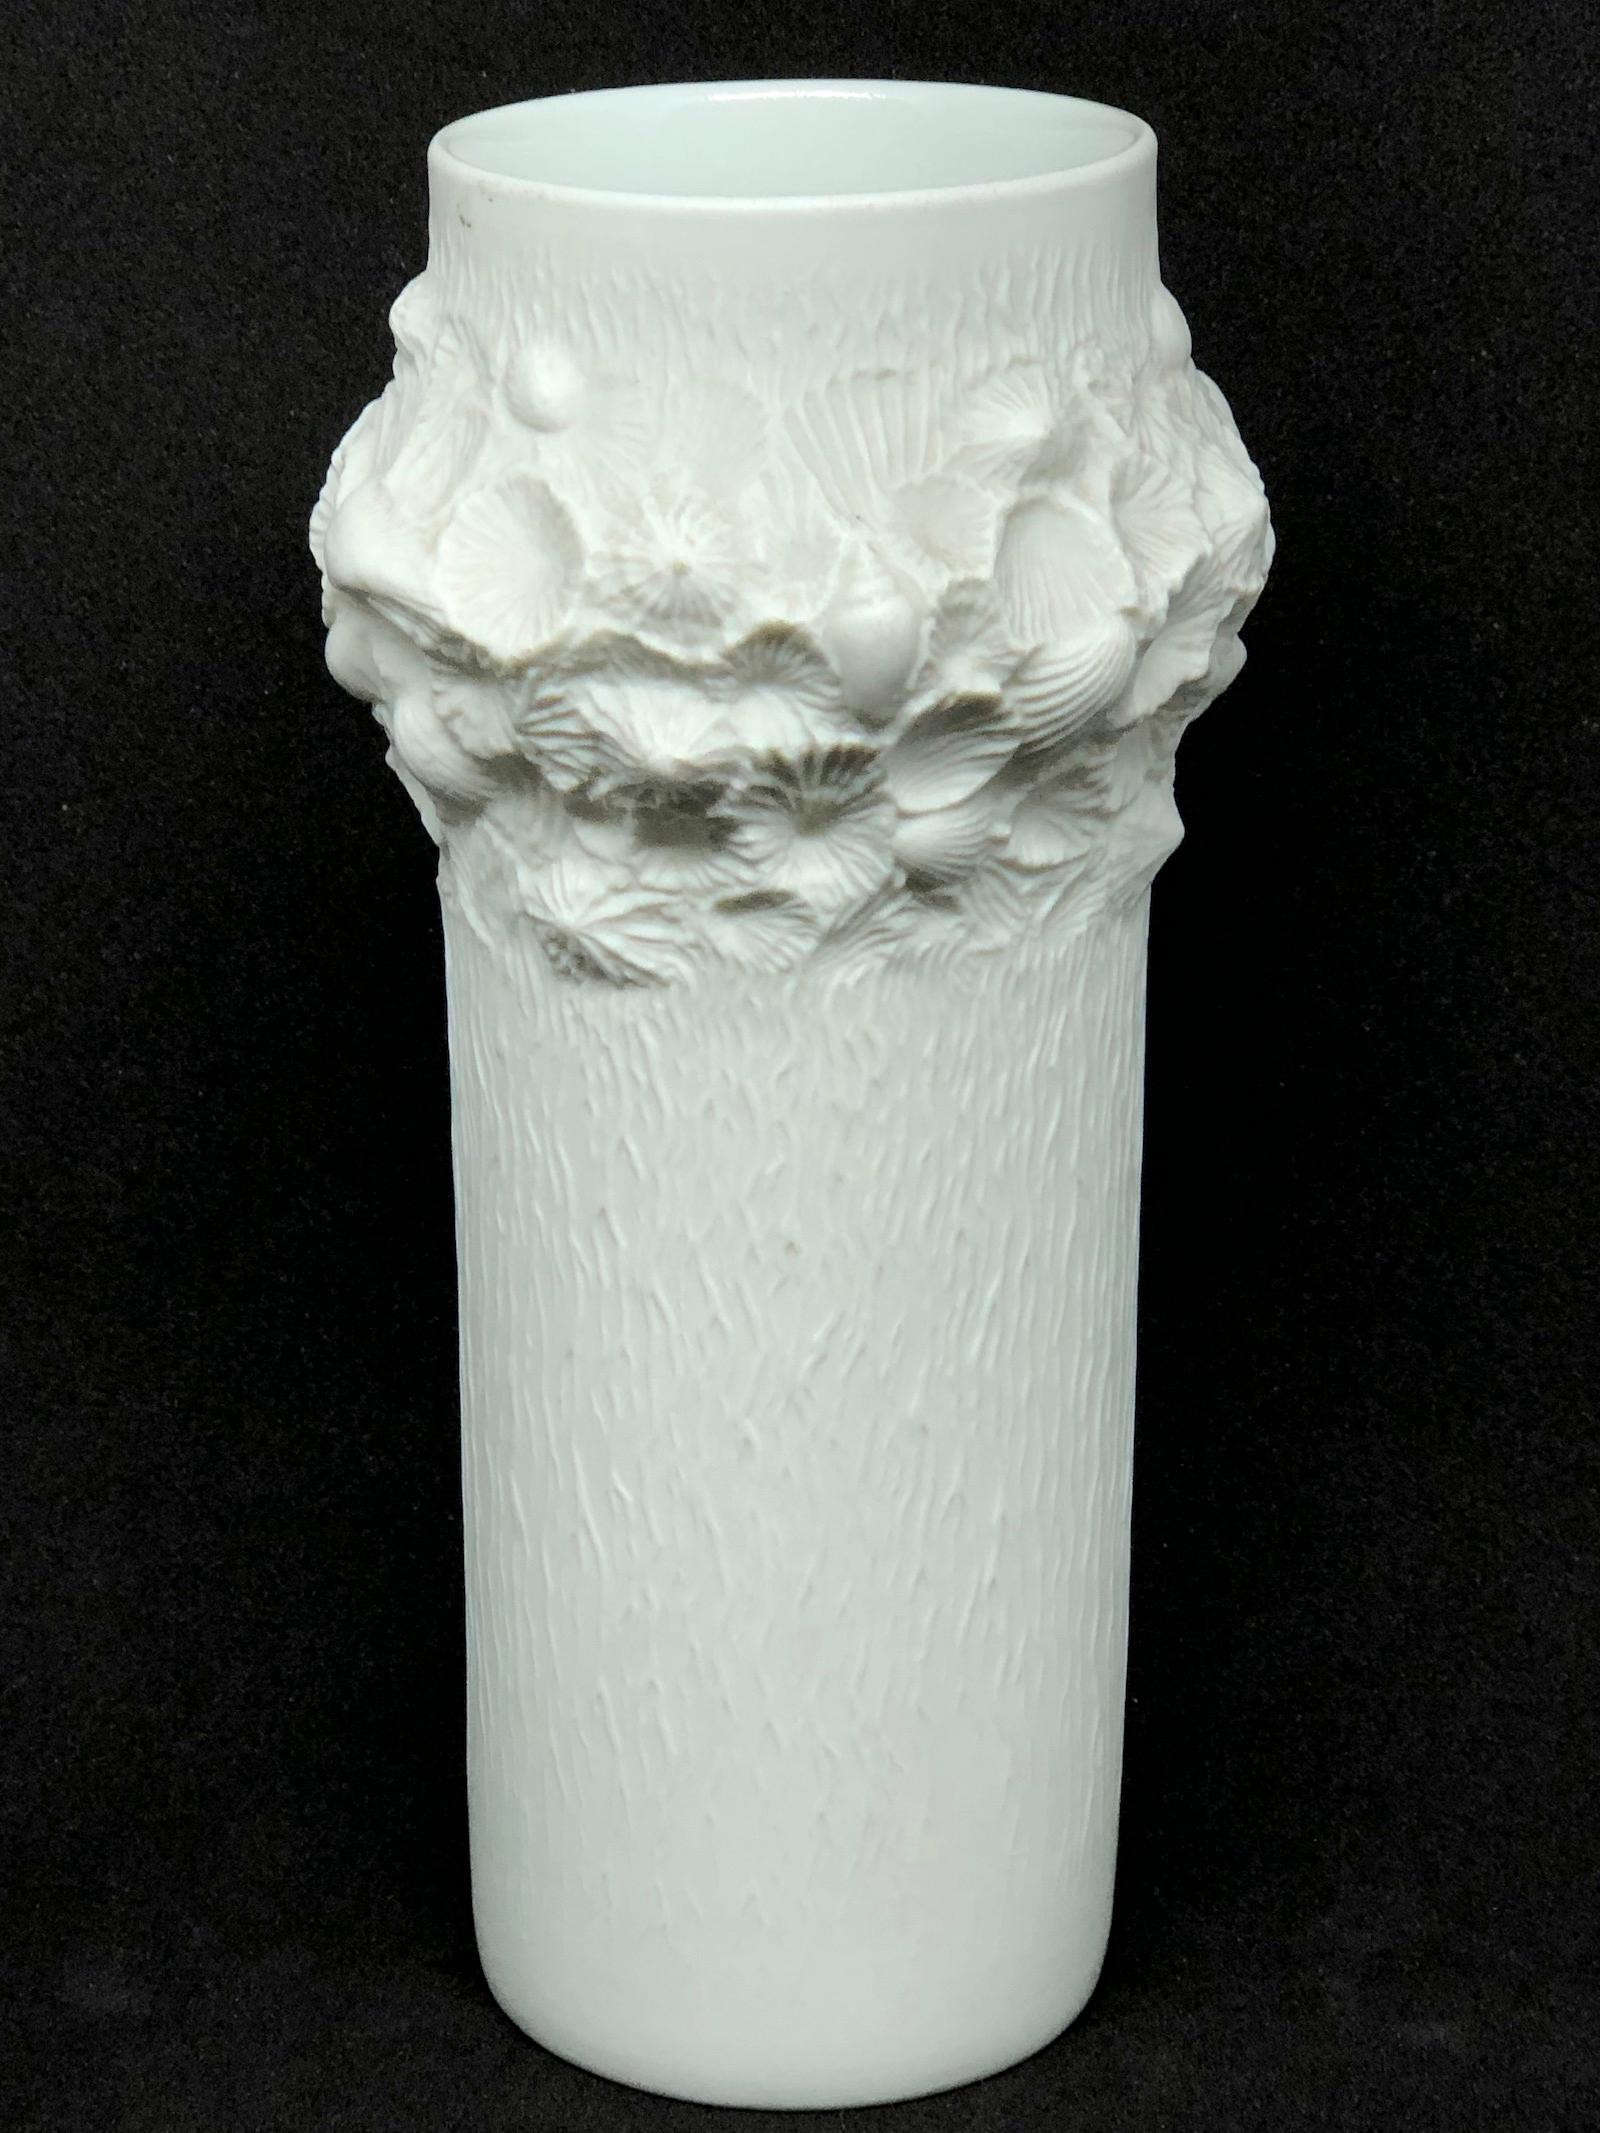 Eine erstaunliche Biskuit-Porzellan Mitte des Jahrhunderts Studio Kunst Keramik Vase in Deutschland gemacht, von Kaiser Porzellan, ca. 1970er Jahre. Die Vase ist in sehr gutem Zustand, ohne Chips, Risse oder Flohbisse. Signiert mit Manufakturzeichen